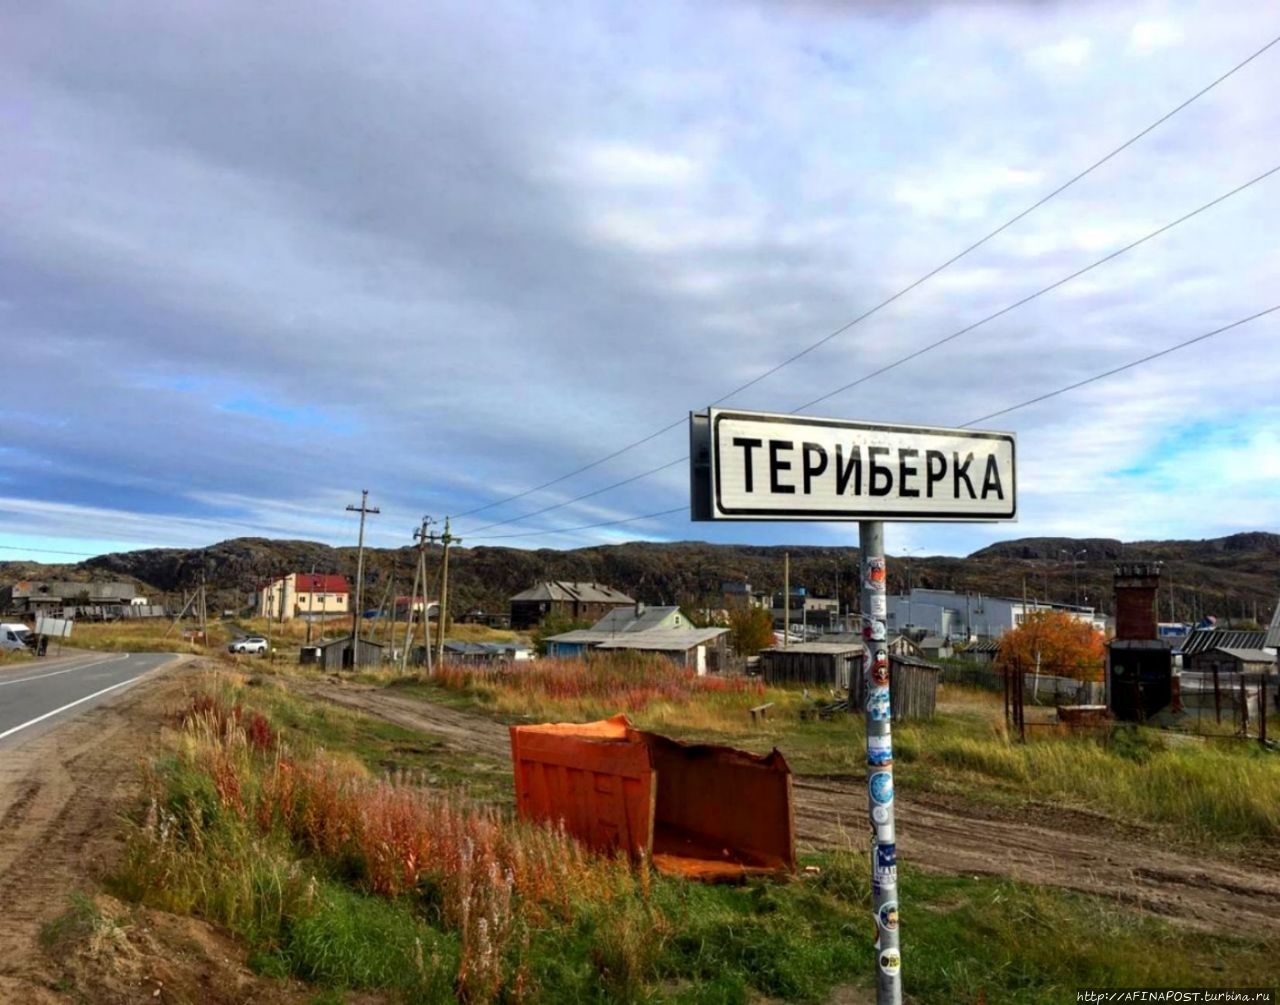 Посёлок Териберка Териберка, Россия